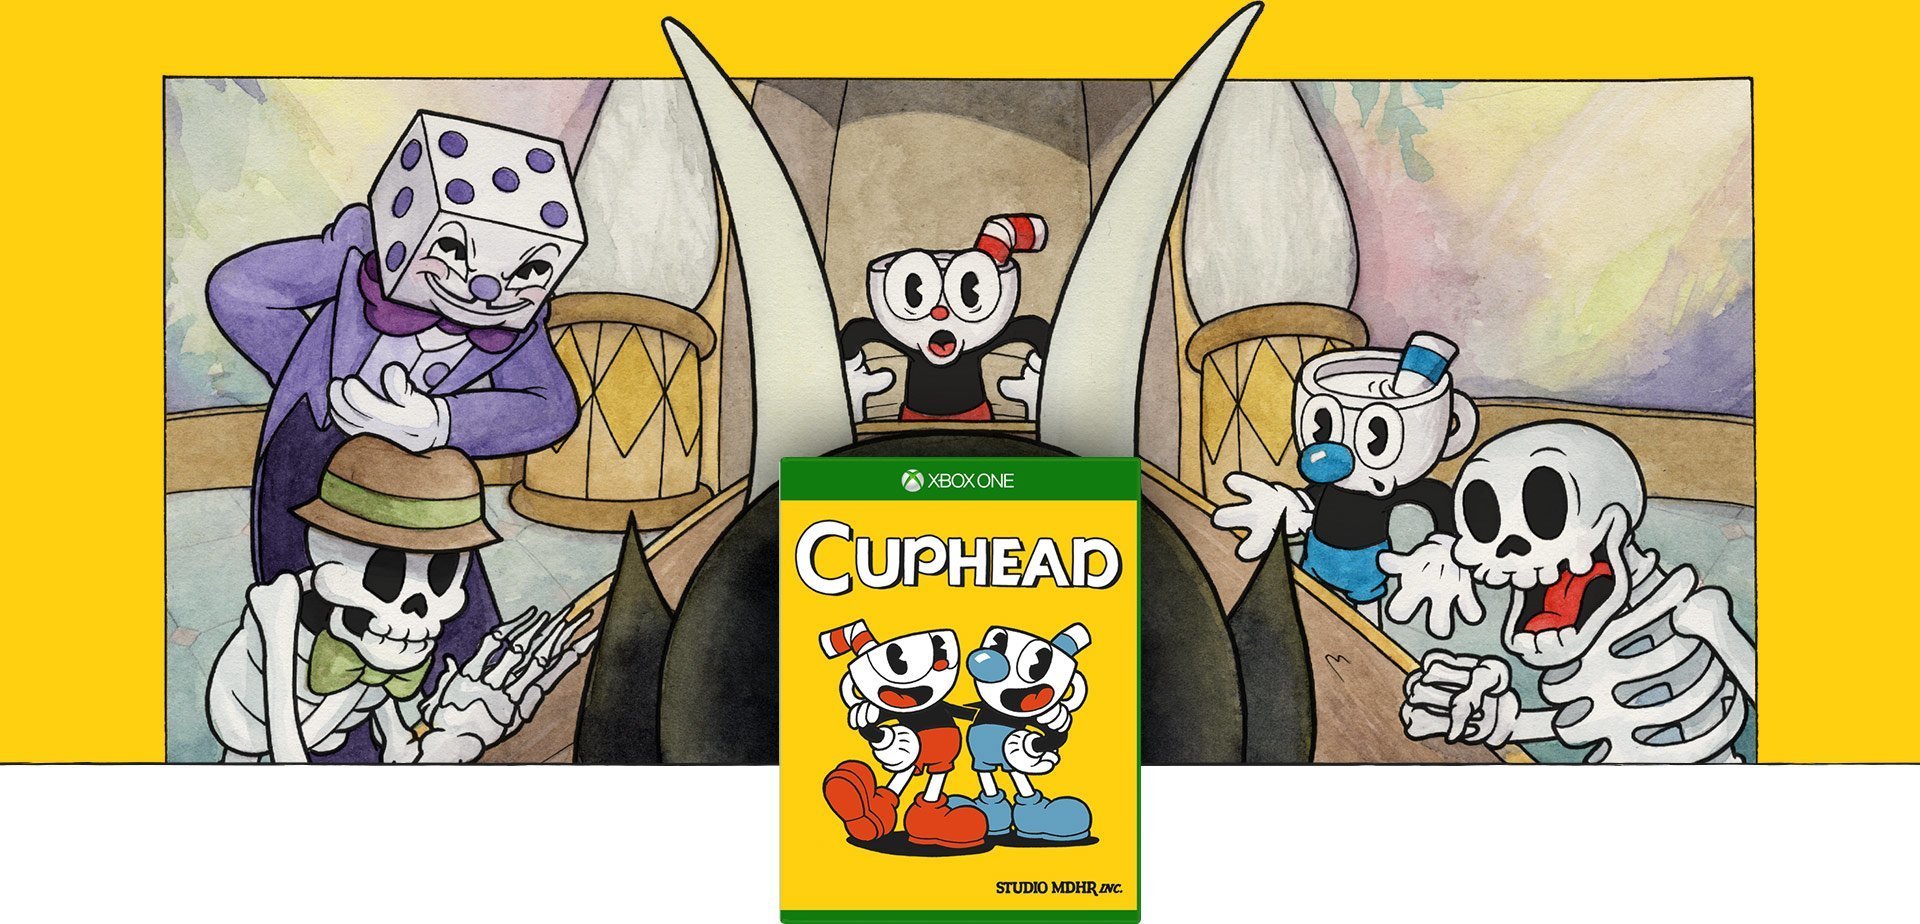 Nostaljik Animasyon Estetiğiyle Yeni Bir Oyun: Cuphead